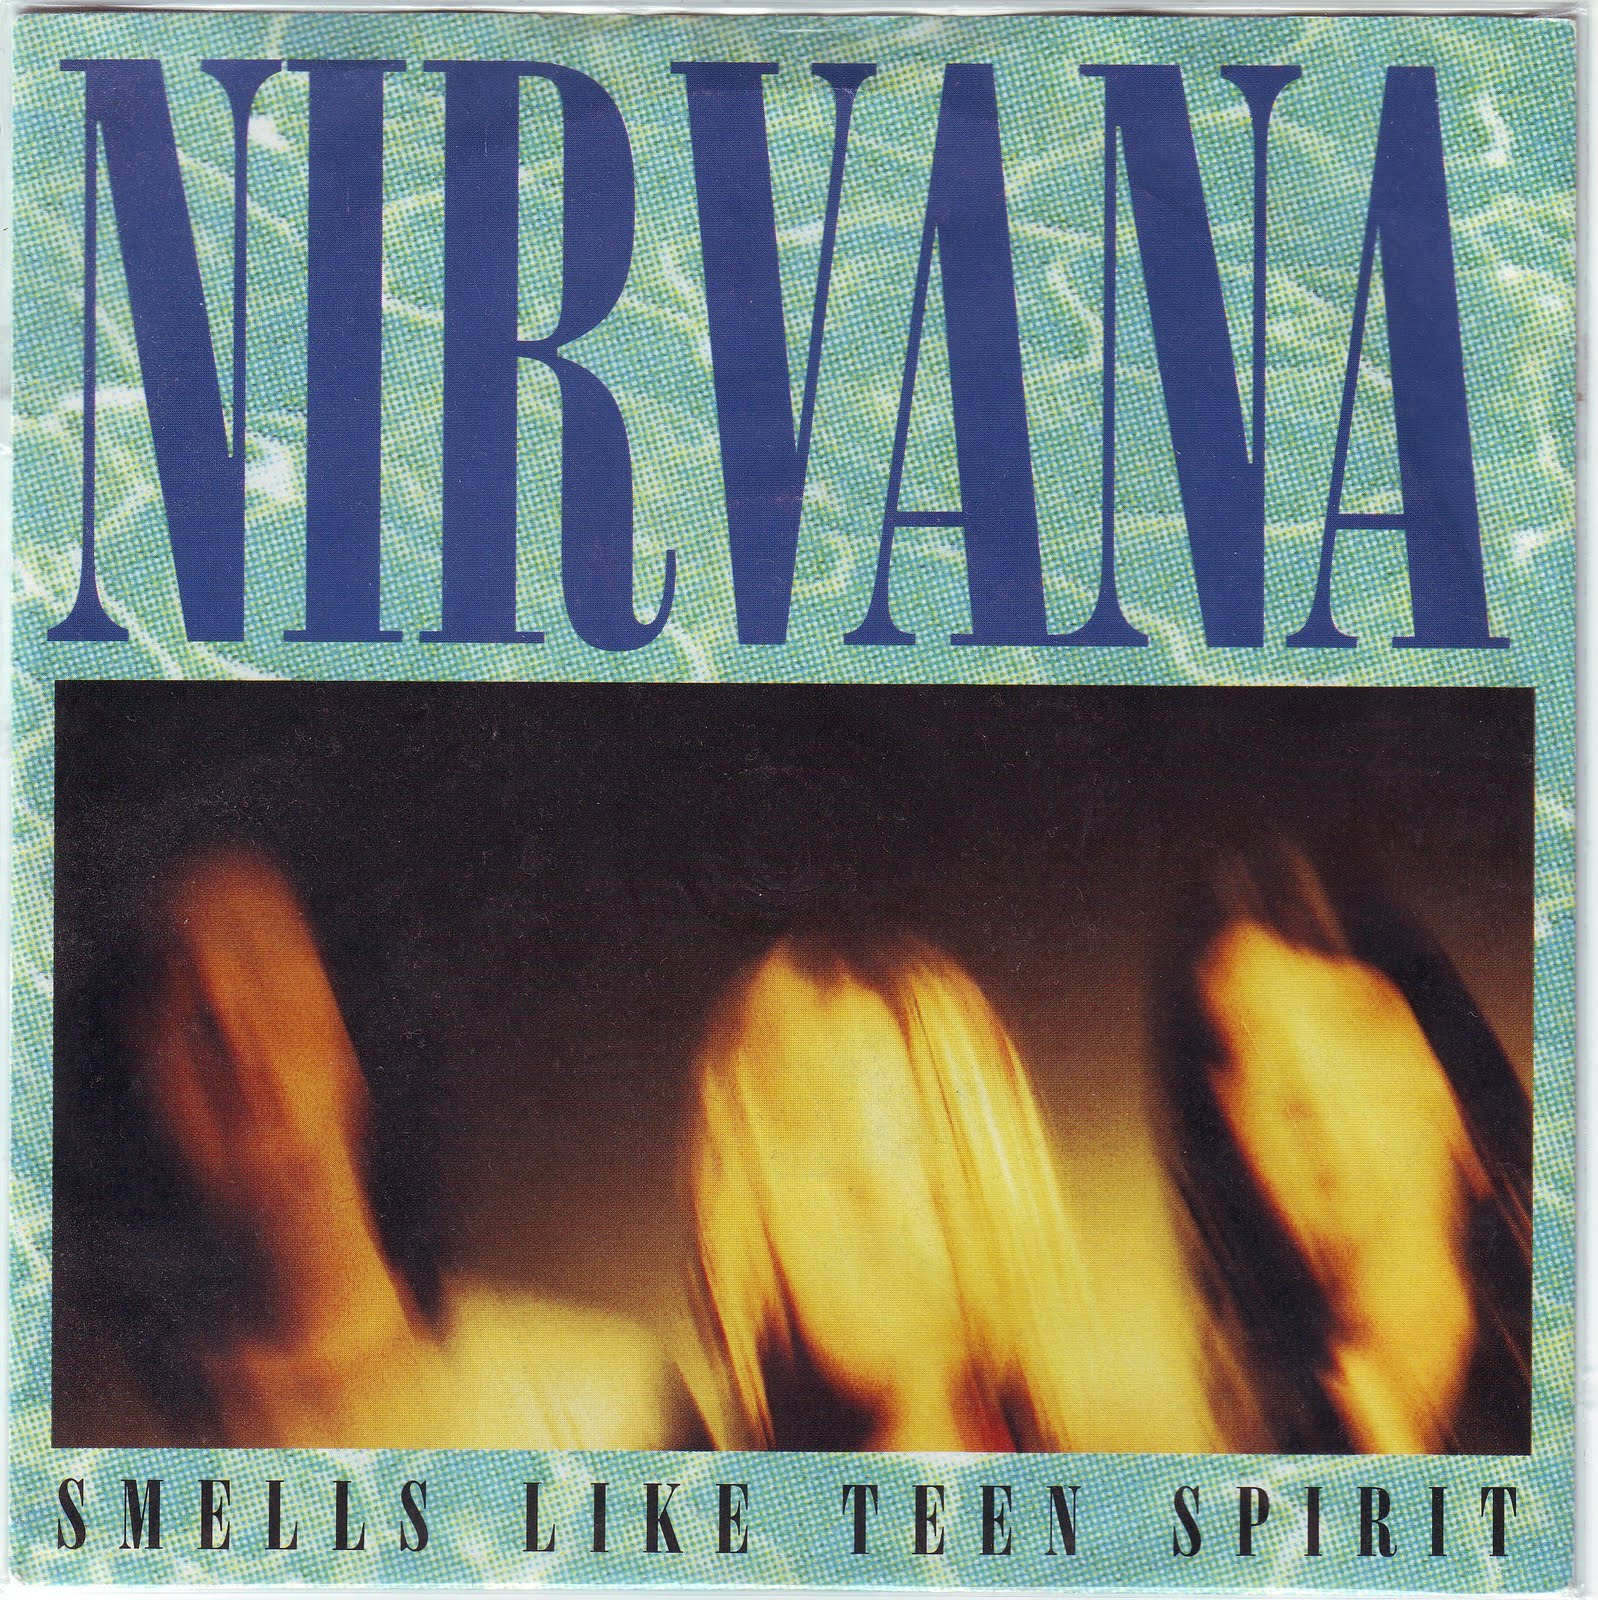 Flashback Friday: “Smells Like Teen Spirit” by Nirvana